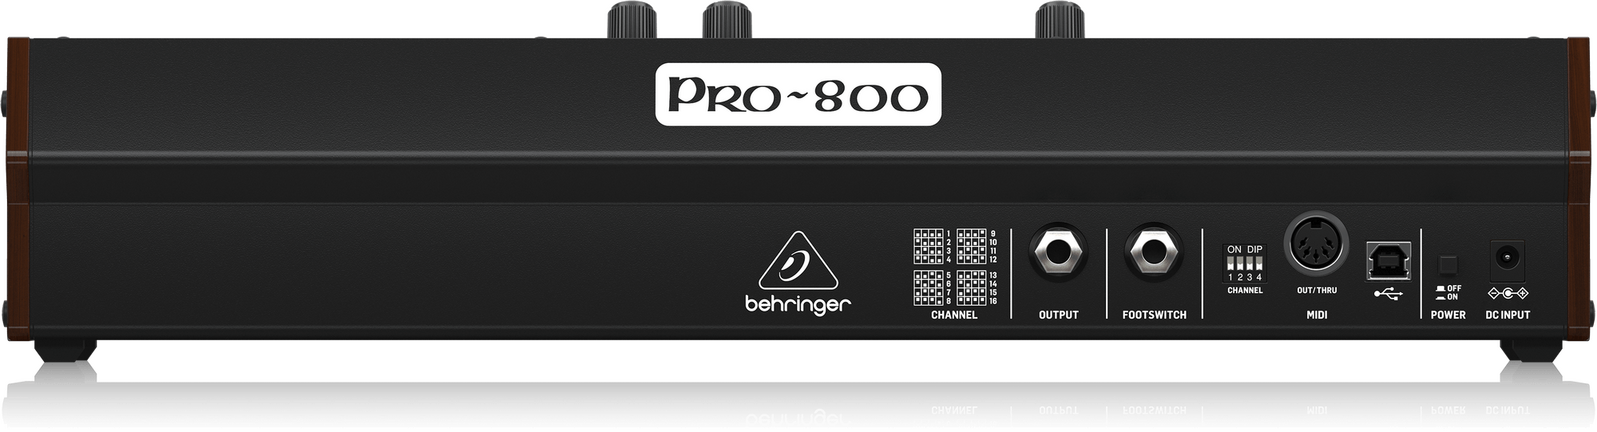 Behringer PRO-800